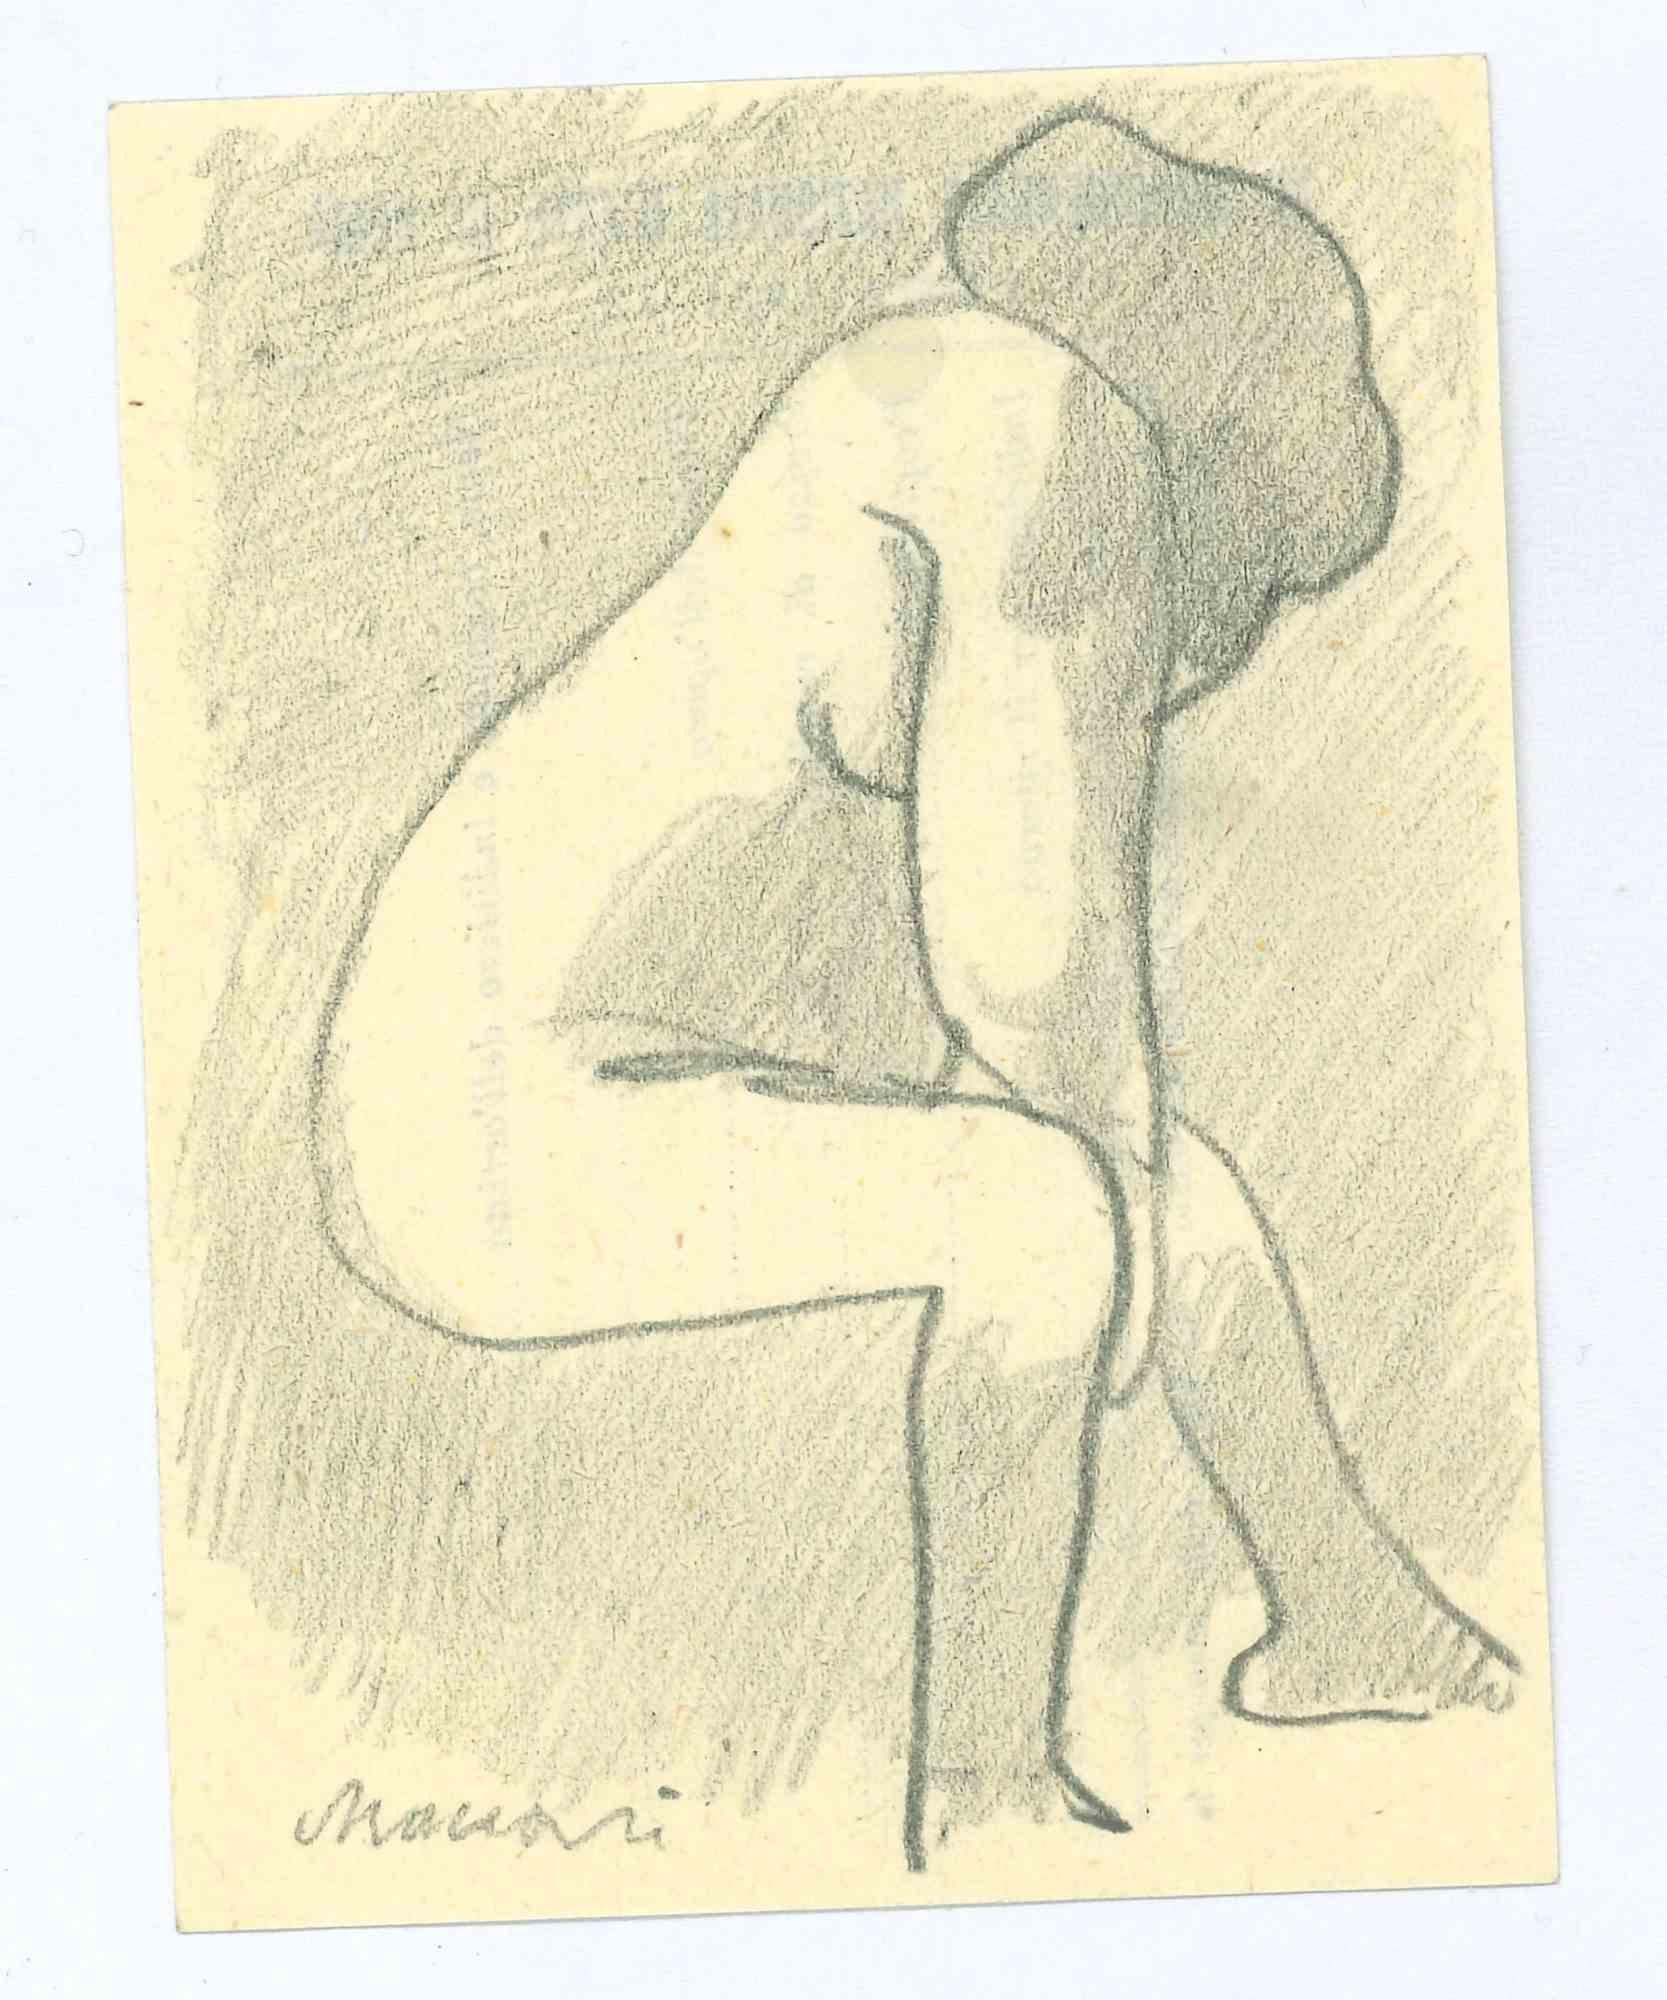 Der Akt ist eine Bleistiftzeichnung von Mino Maccari  (1924-1989) in den 1960er Jahren.

Handsigniert auf der Unterseite.

Guter Zustand.

Mino Maccari (Siena, 1924-Rom, 16. Juni 1989) war ein italienischer Schriftsteller, Maler, Graveur und